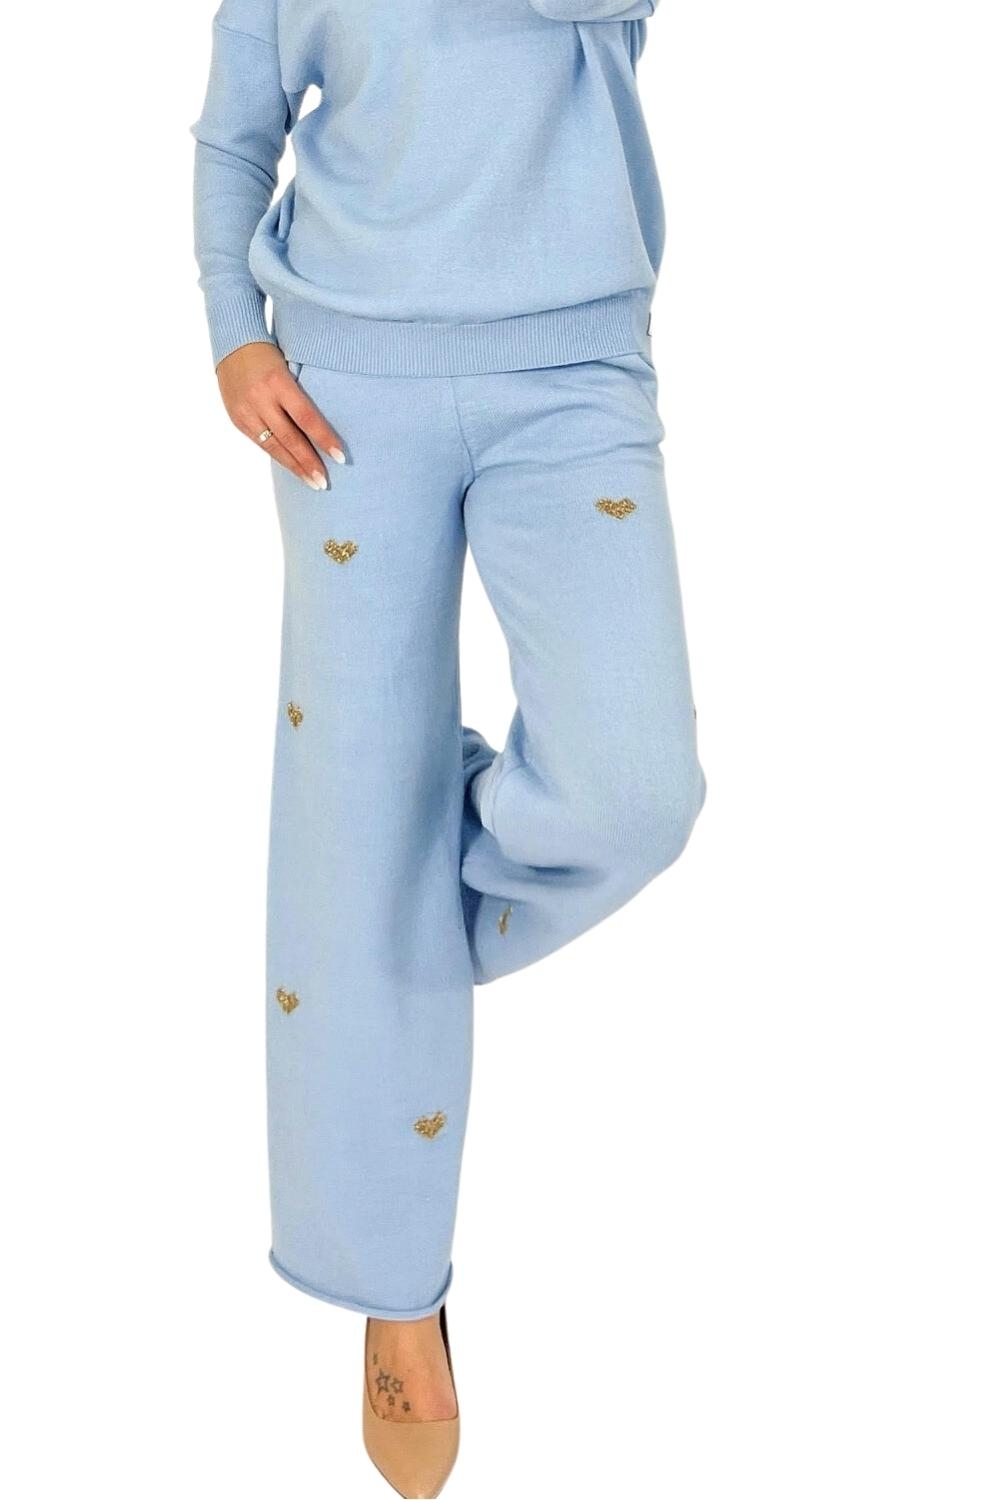 Dámské kalhoty Comfort fit blue